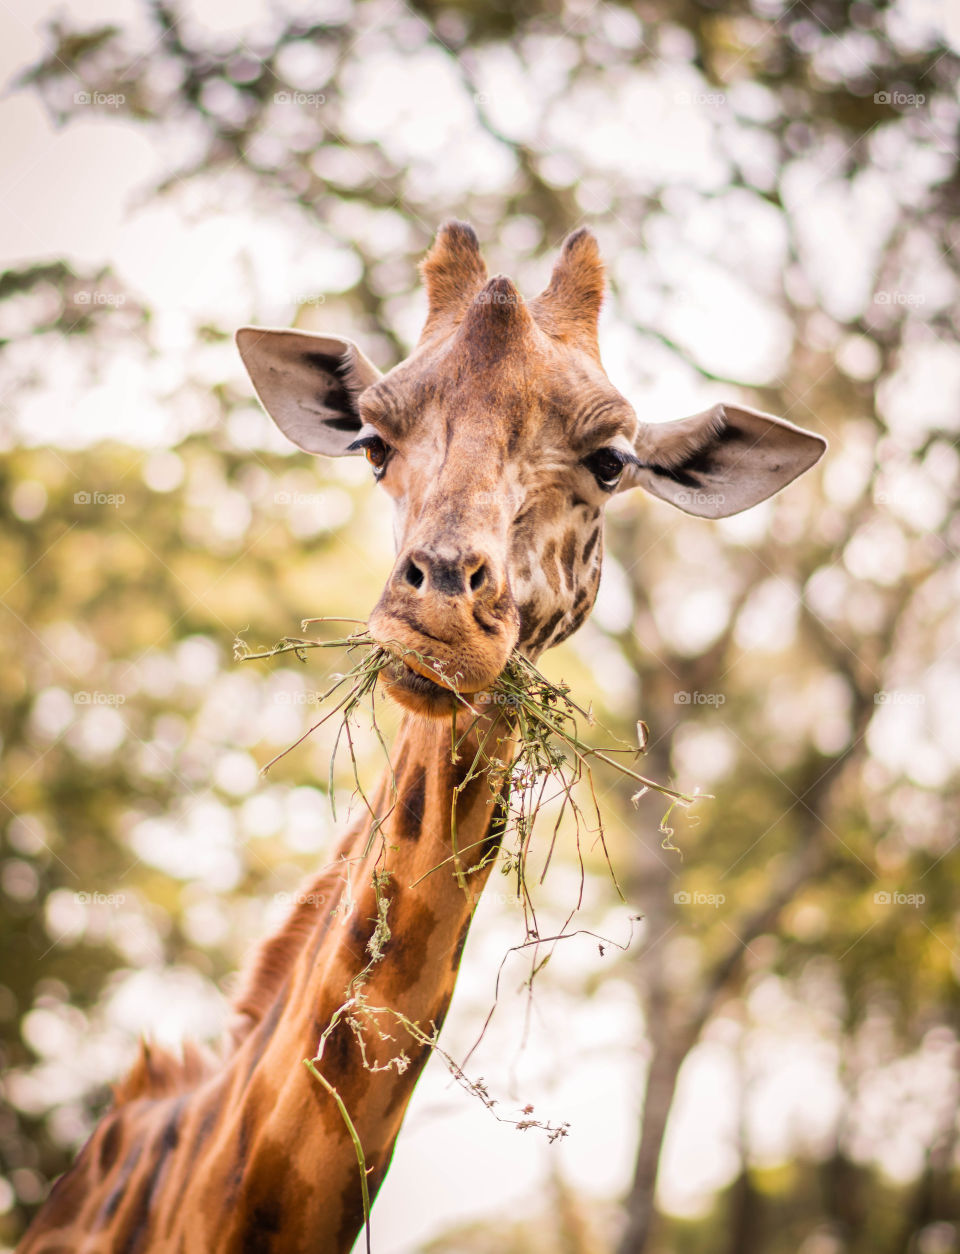 A giraffe chewing grass